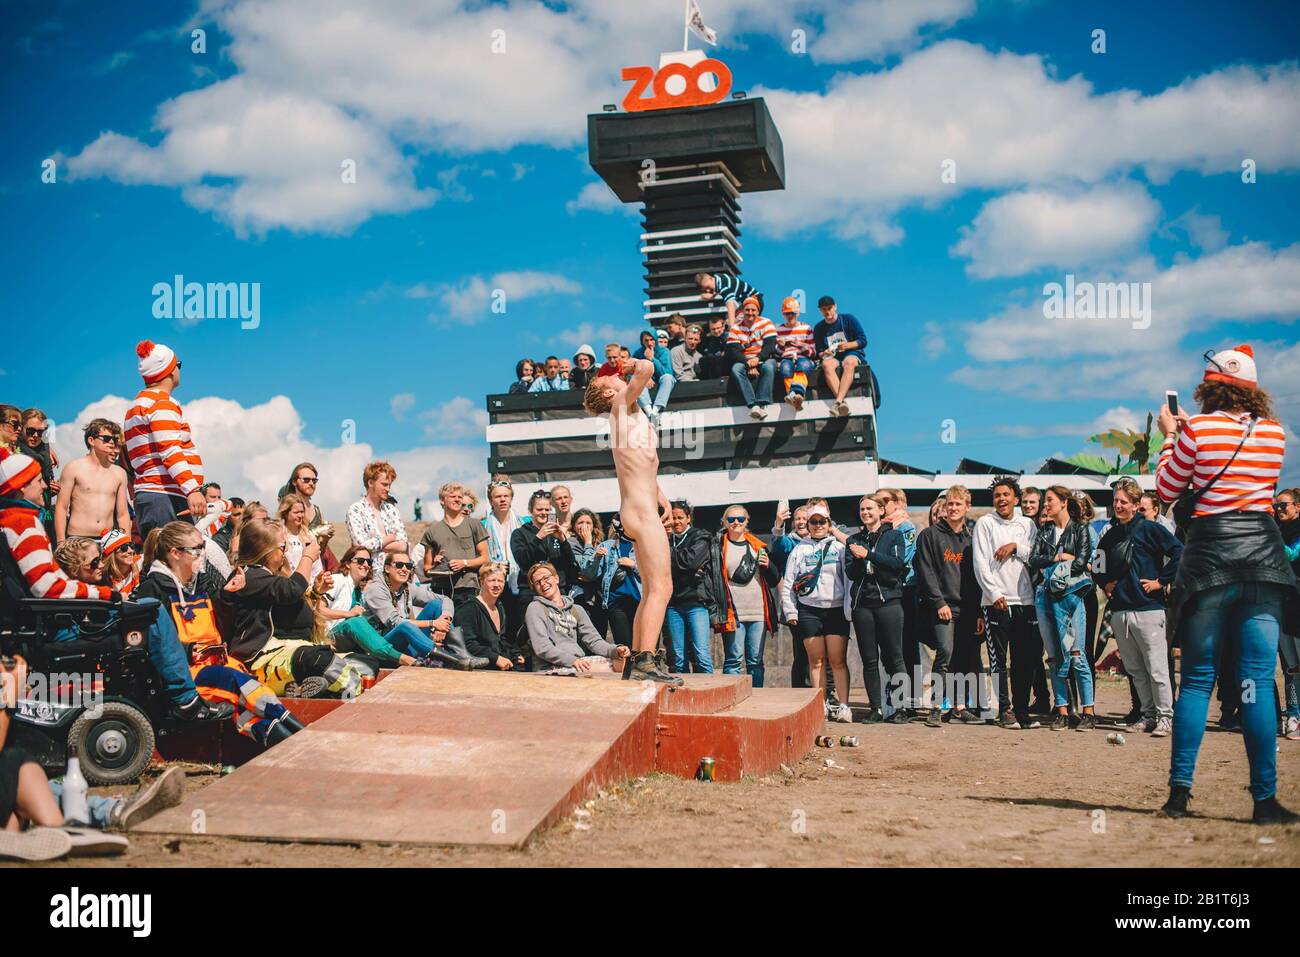 Dream City, Roskilde Festival 2017 avec des personnes excitées buvant et profitant du soleil. Roskilde, Danemark Banque D'Images